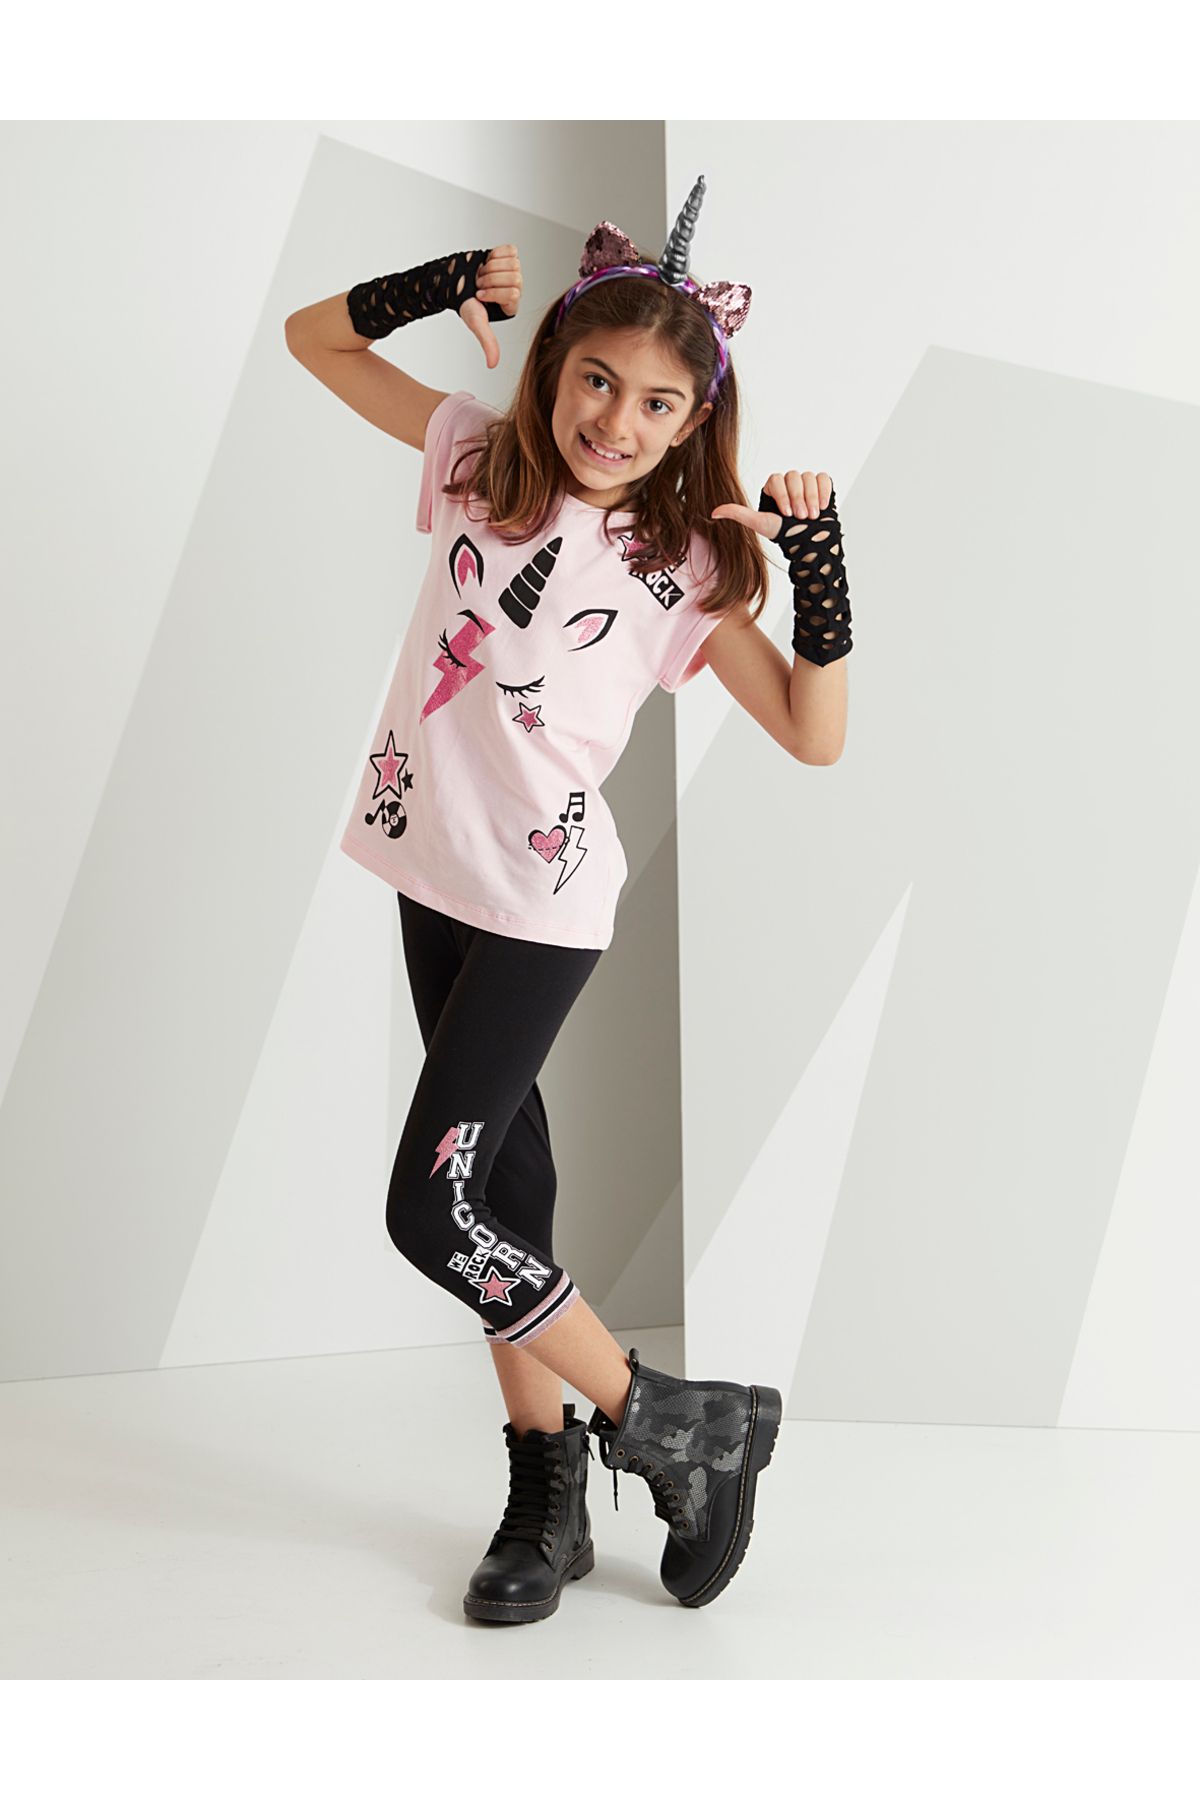 MSHB&G Rocker Unicorn Kız Çocuk T-shirt Kapri Şort Takım